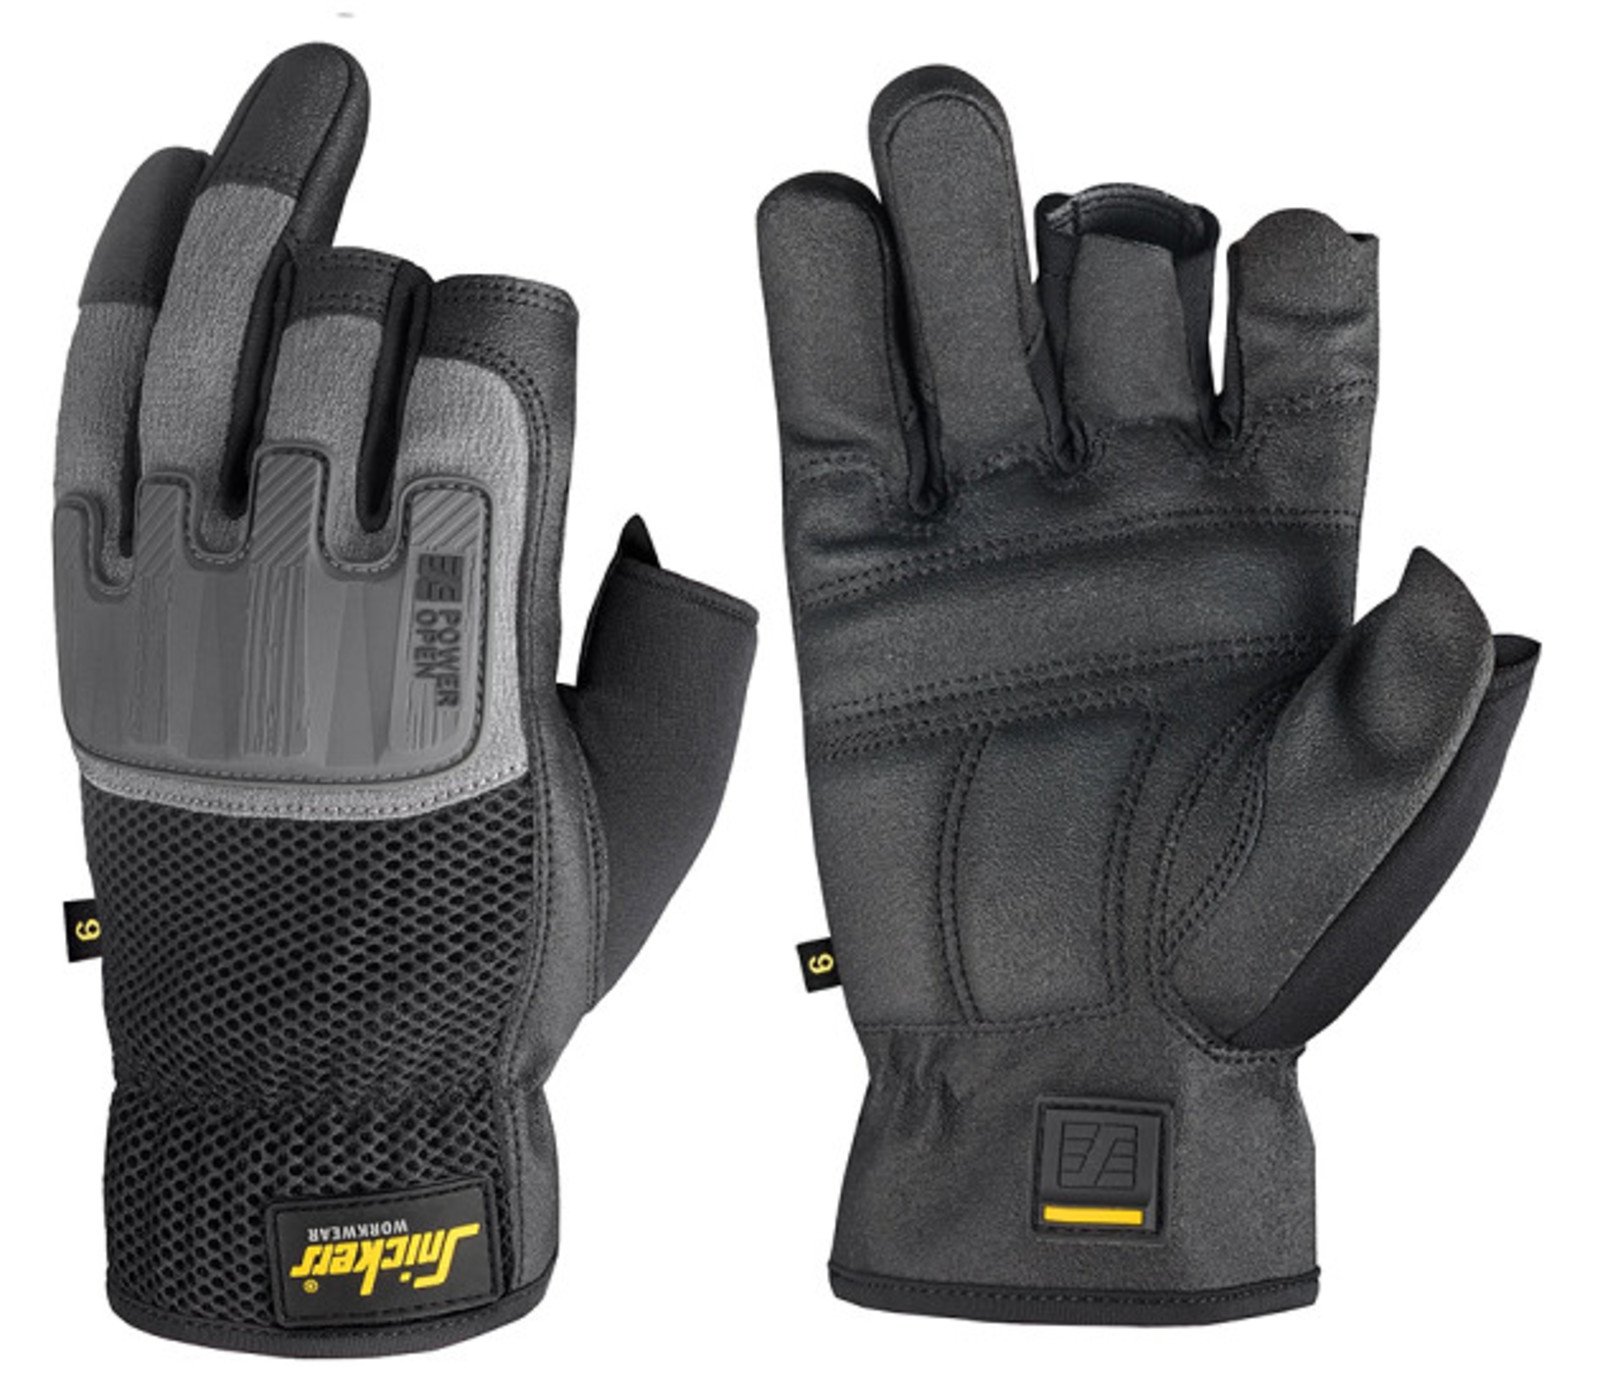 Ochranné rukavice Snickers® Power Open bez prstov - veľkosť: 8/M, farba: sivá/čierna